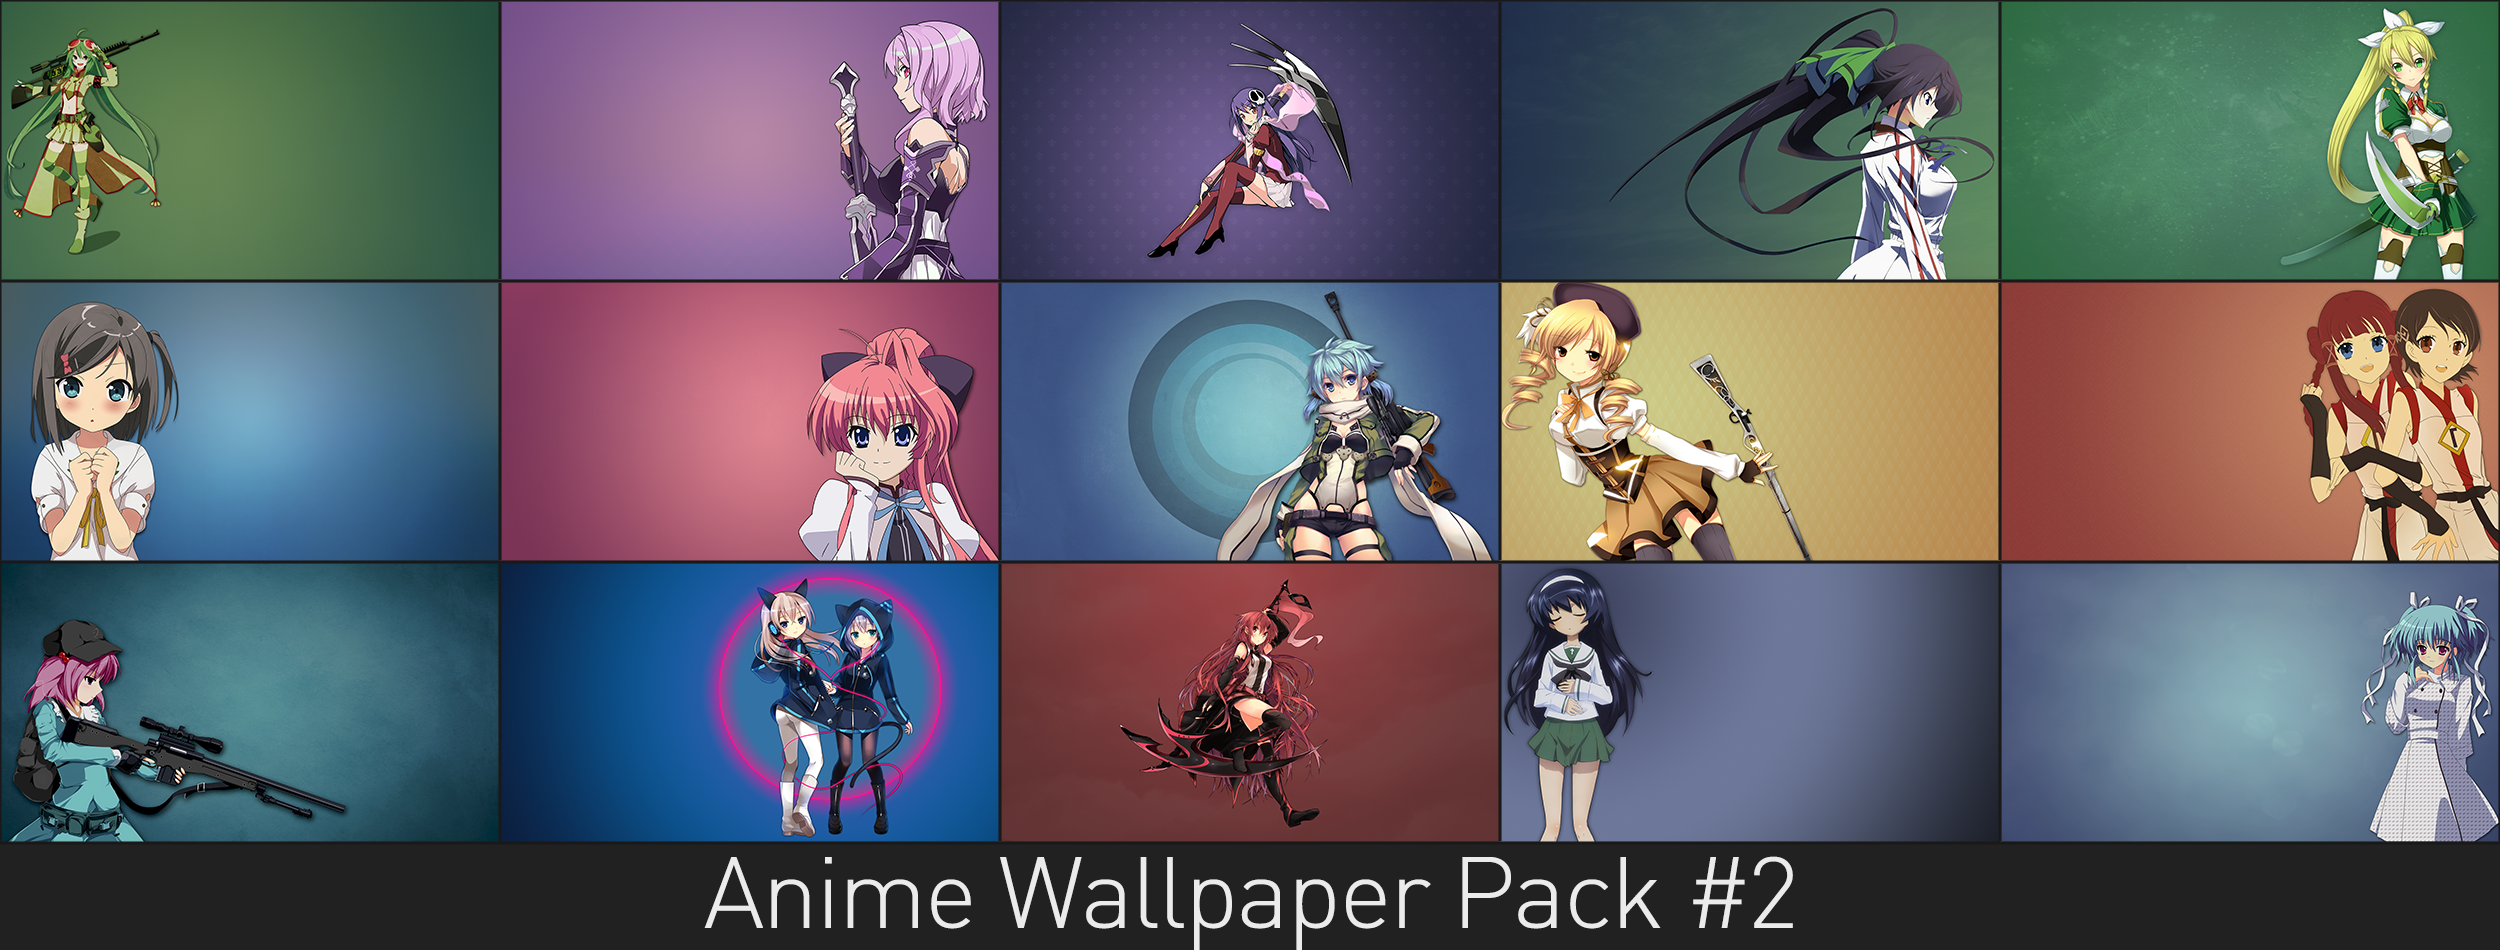 Anime Wallpaper Pack